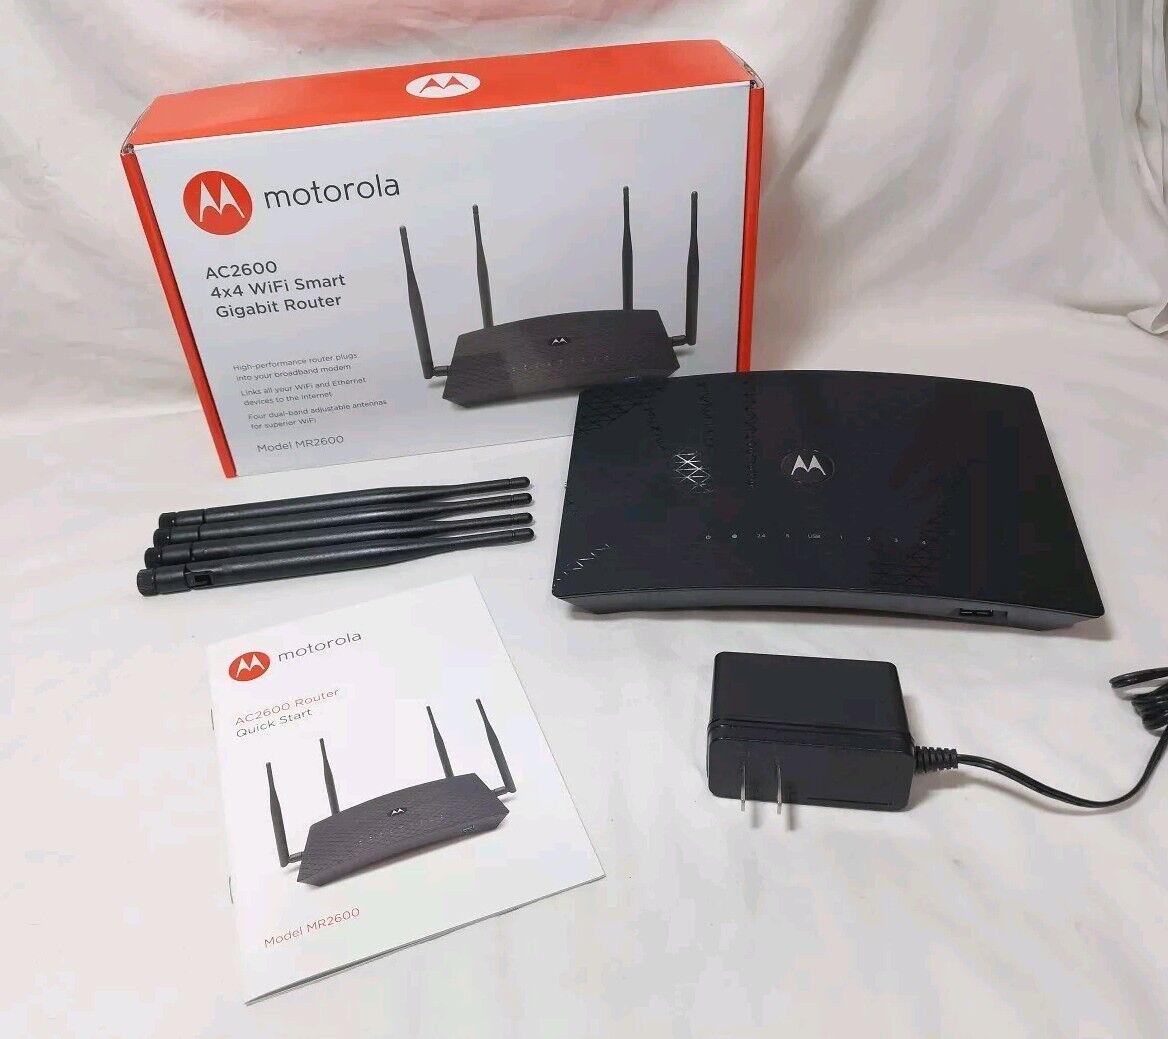 MOTOROLA AC2600 4x4 WiFi Smart Gigabit Router Extended Range MR2600 